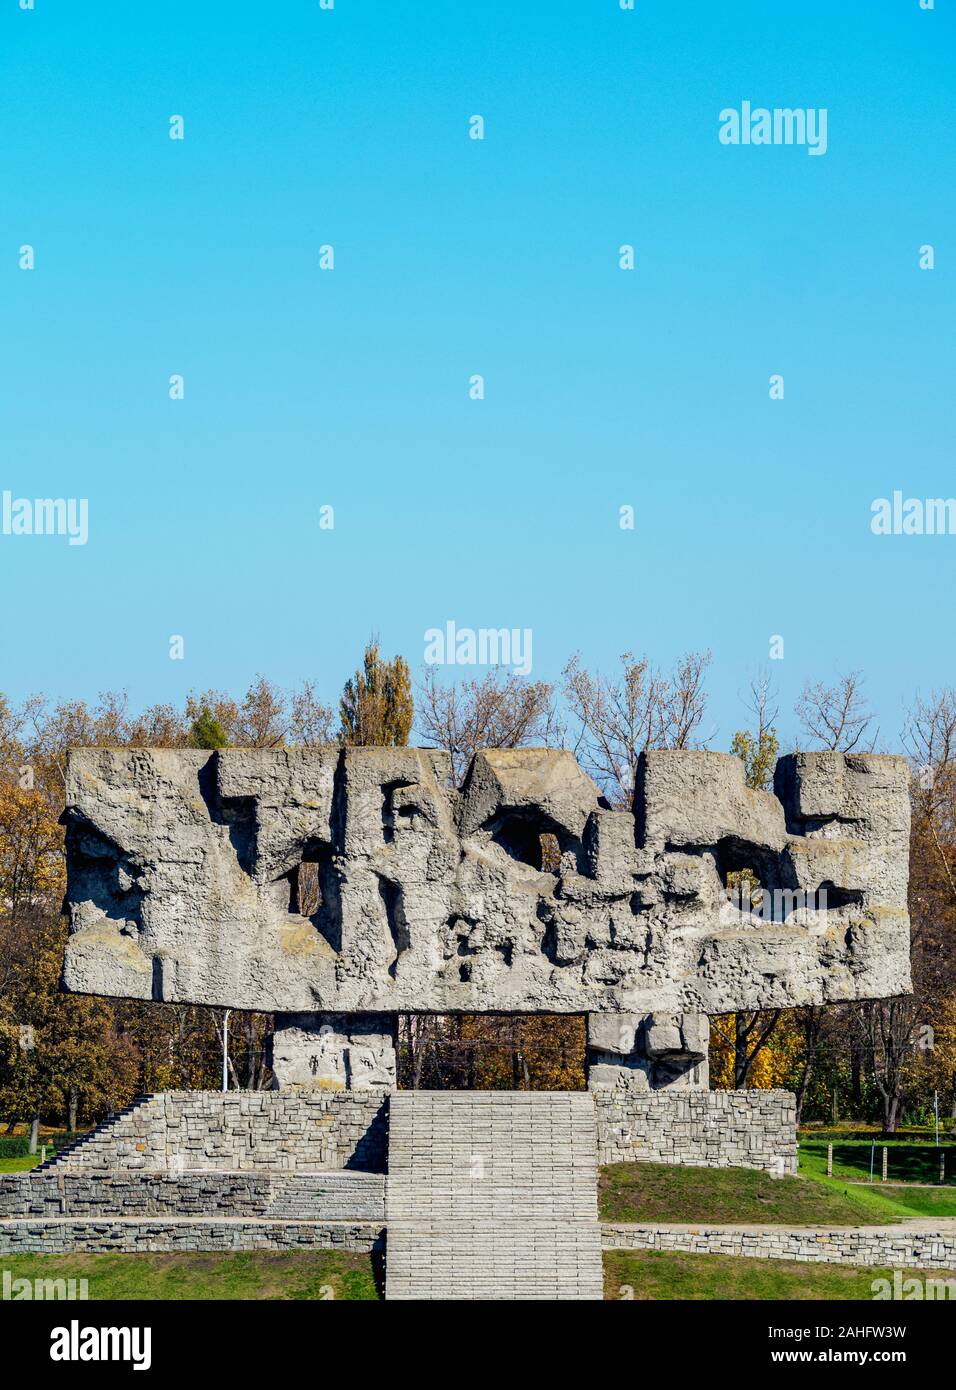 Monument à Majdanek, allemand nazi de concentration et d'extermination camp, voïvodie de Lublin, Lublin, Pologne Banque D'Images